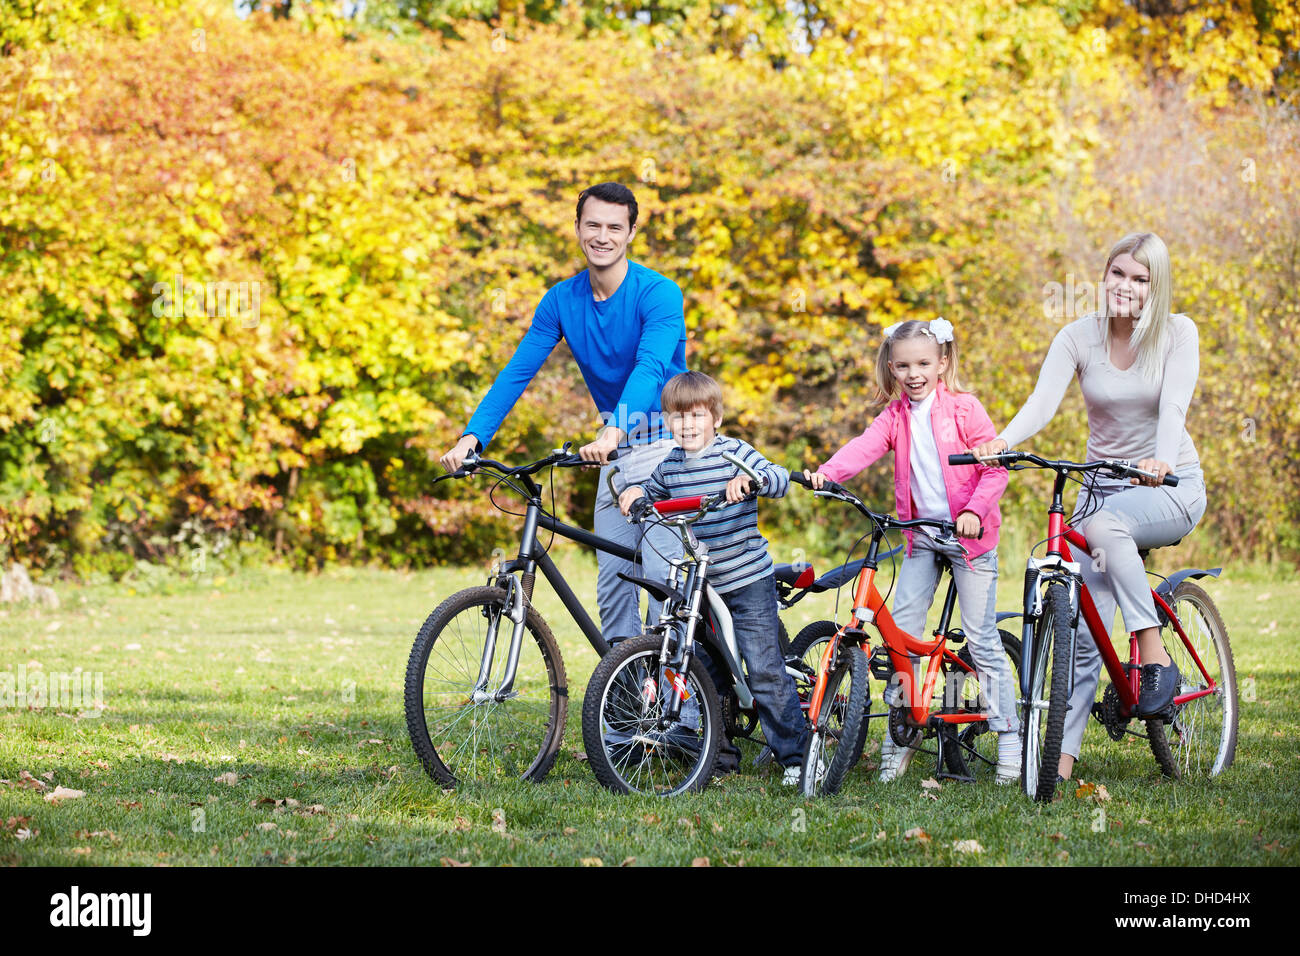 Велосемья. Счастливая семья на велосипедах. Семейный велосипед. Счастливая семья в парке на велосипедах. Семья с детьми на велосипедах.